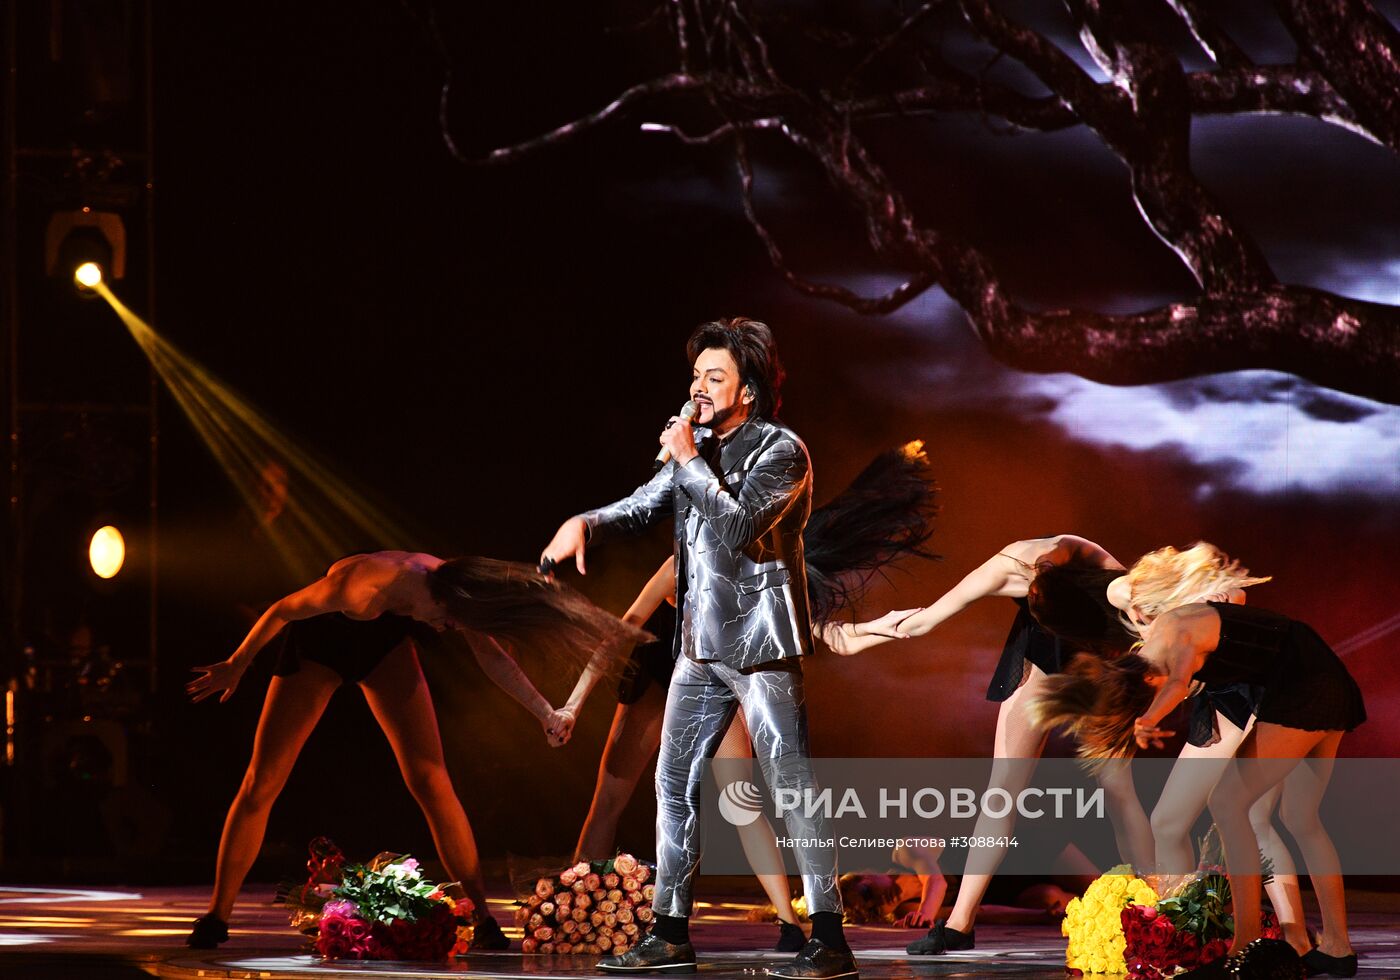 Концерт Филиппа Киркорова в Государственном Кремлевском дворце